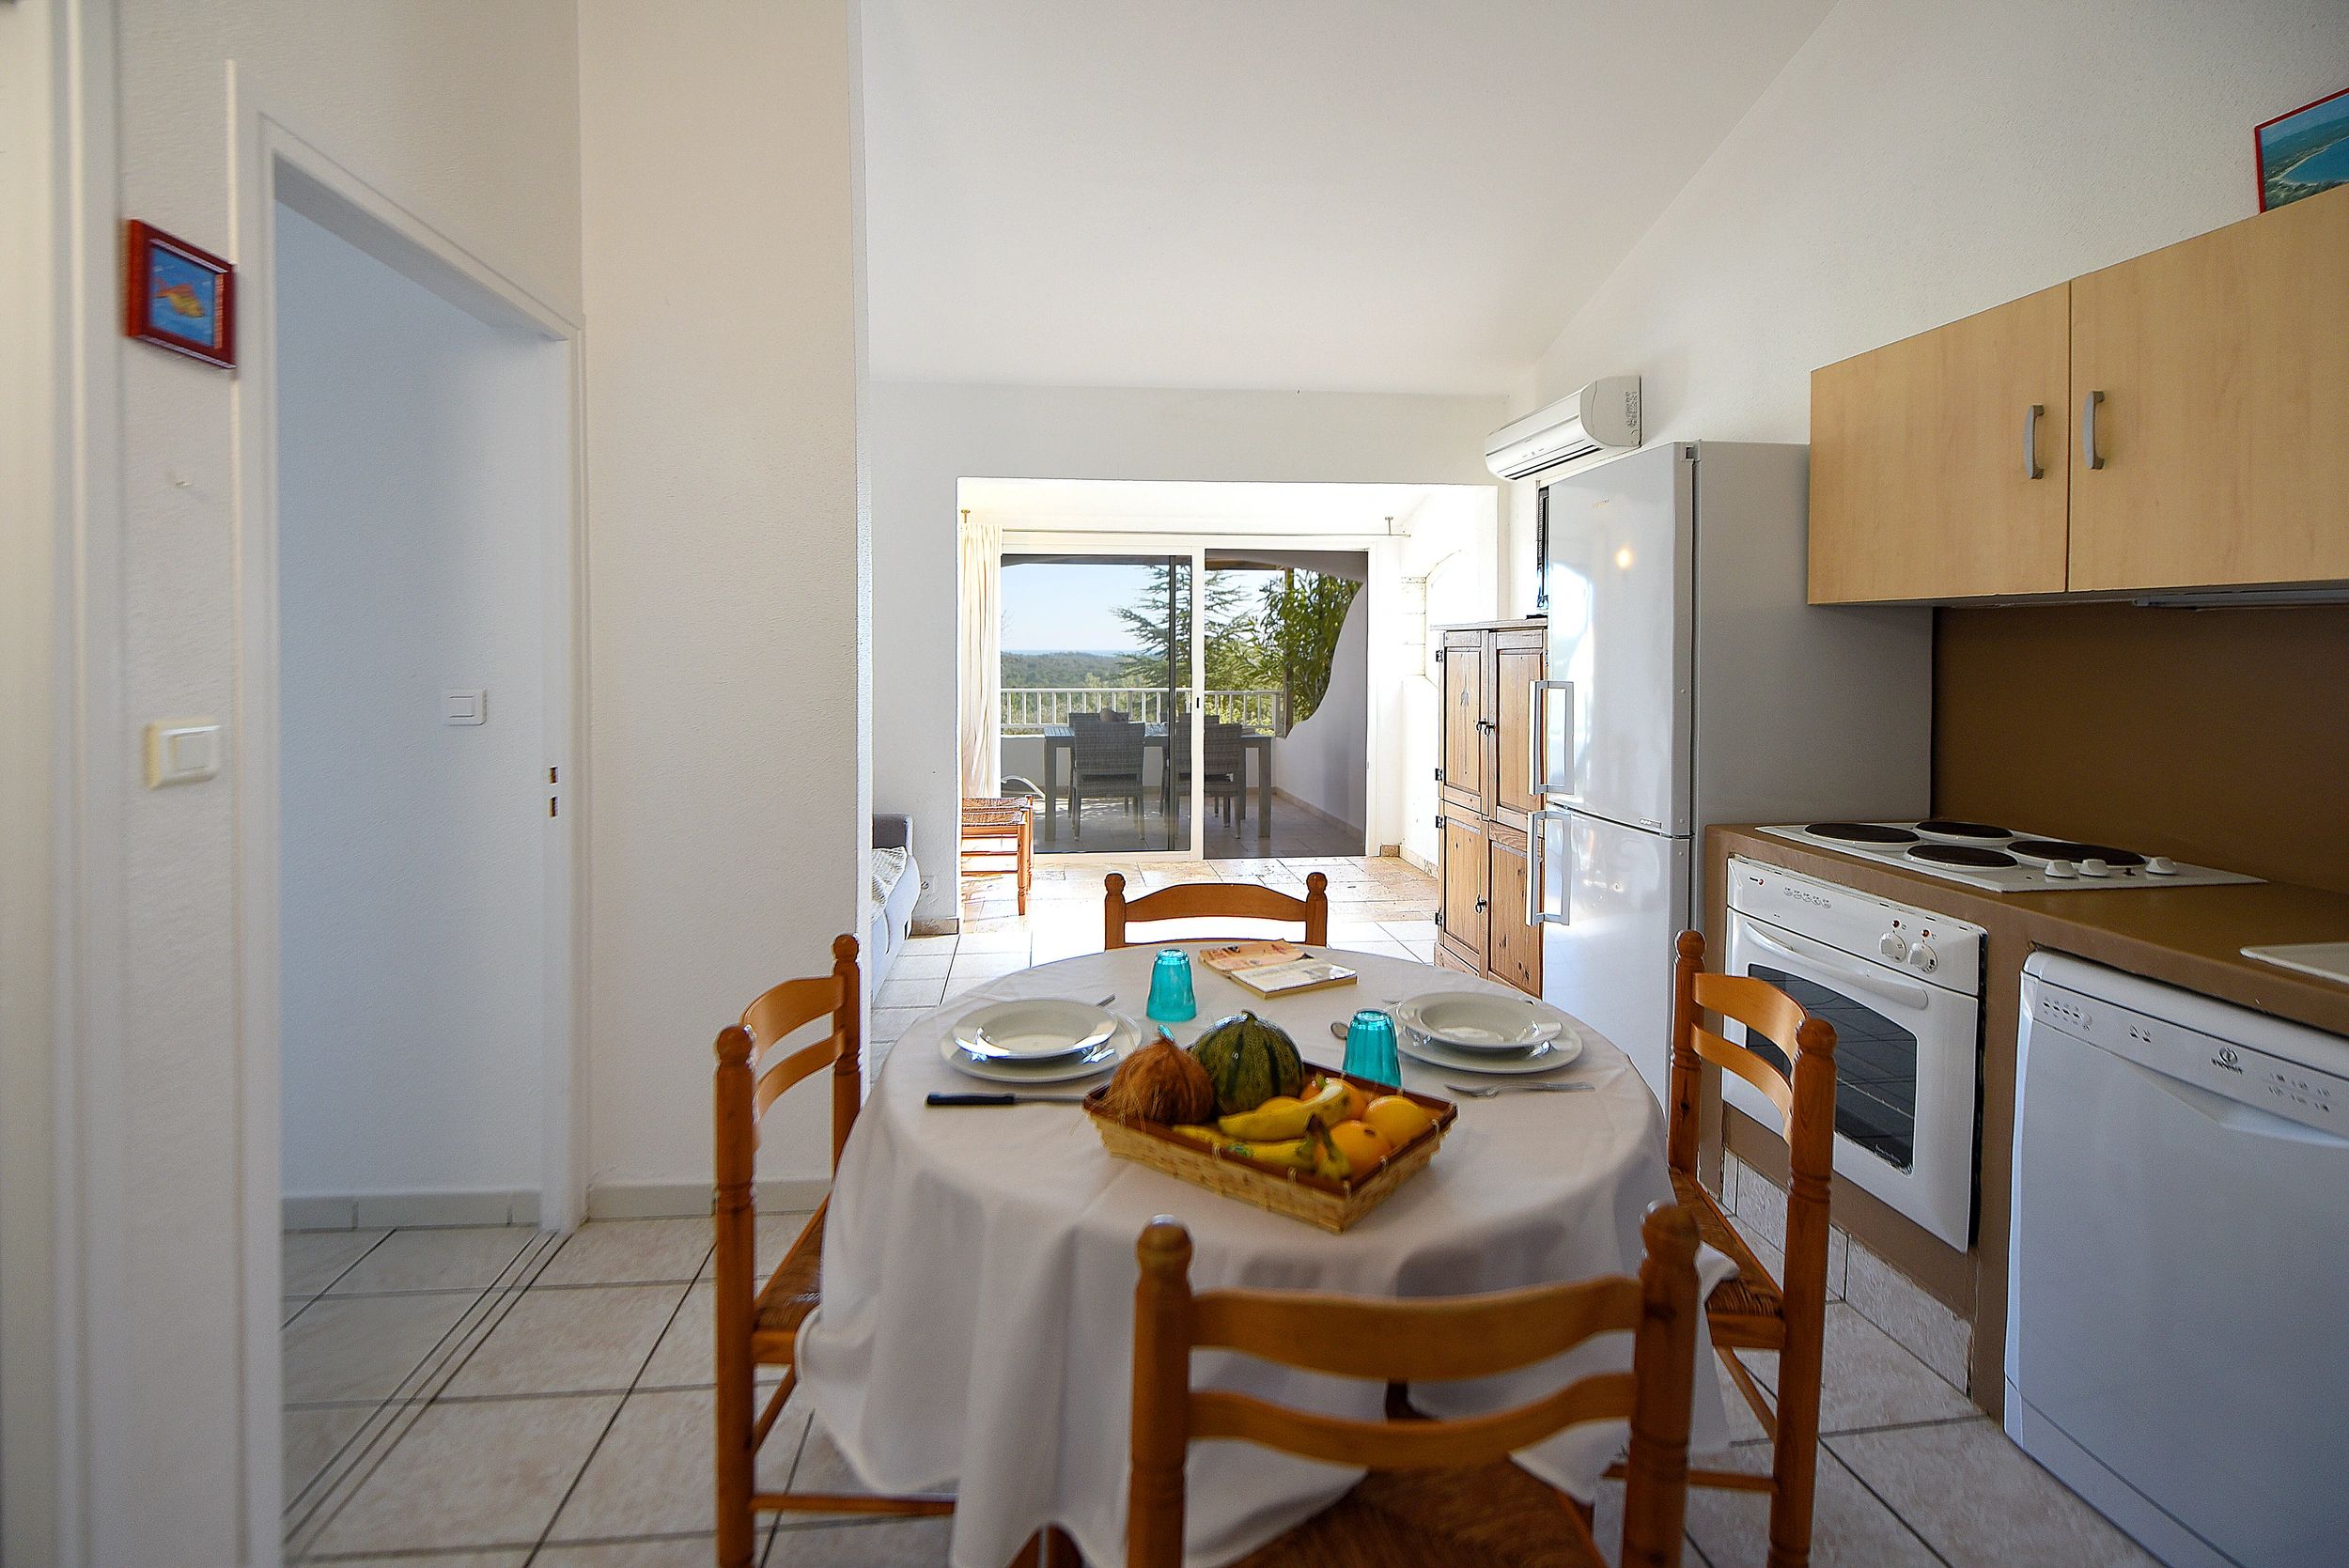 Appartement de vacances pour 4 à 6 personnes avec cuisine équipée à Porto-Vecchio